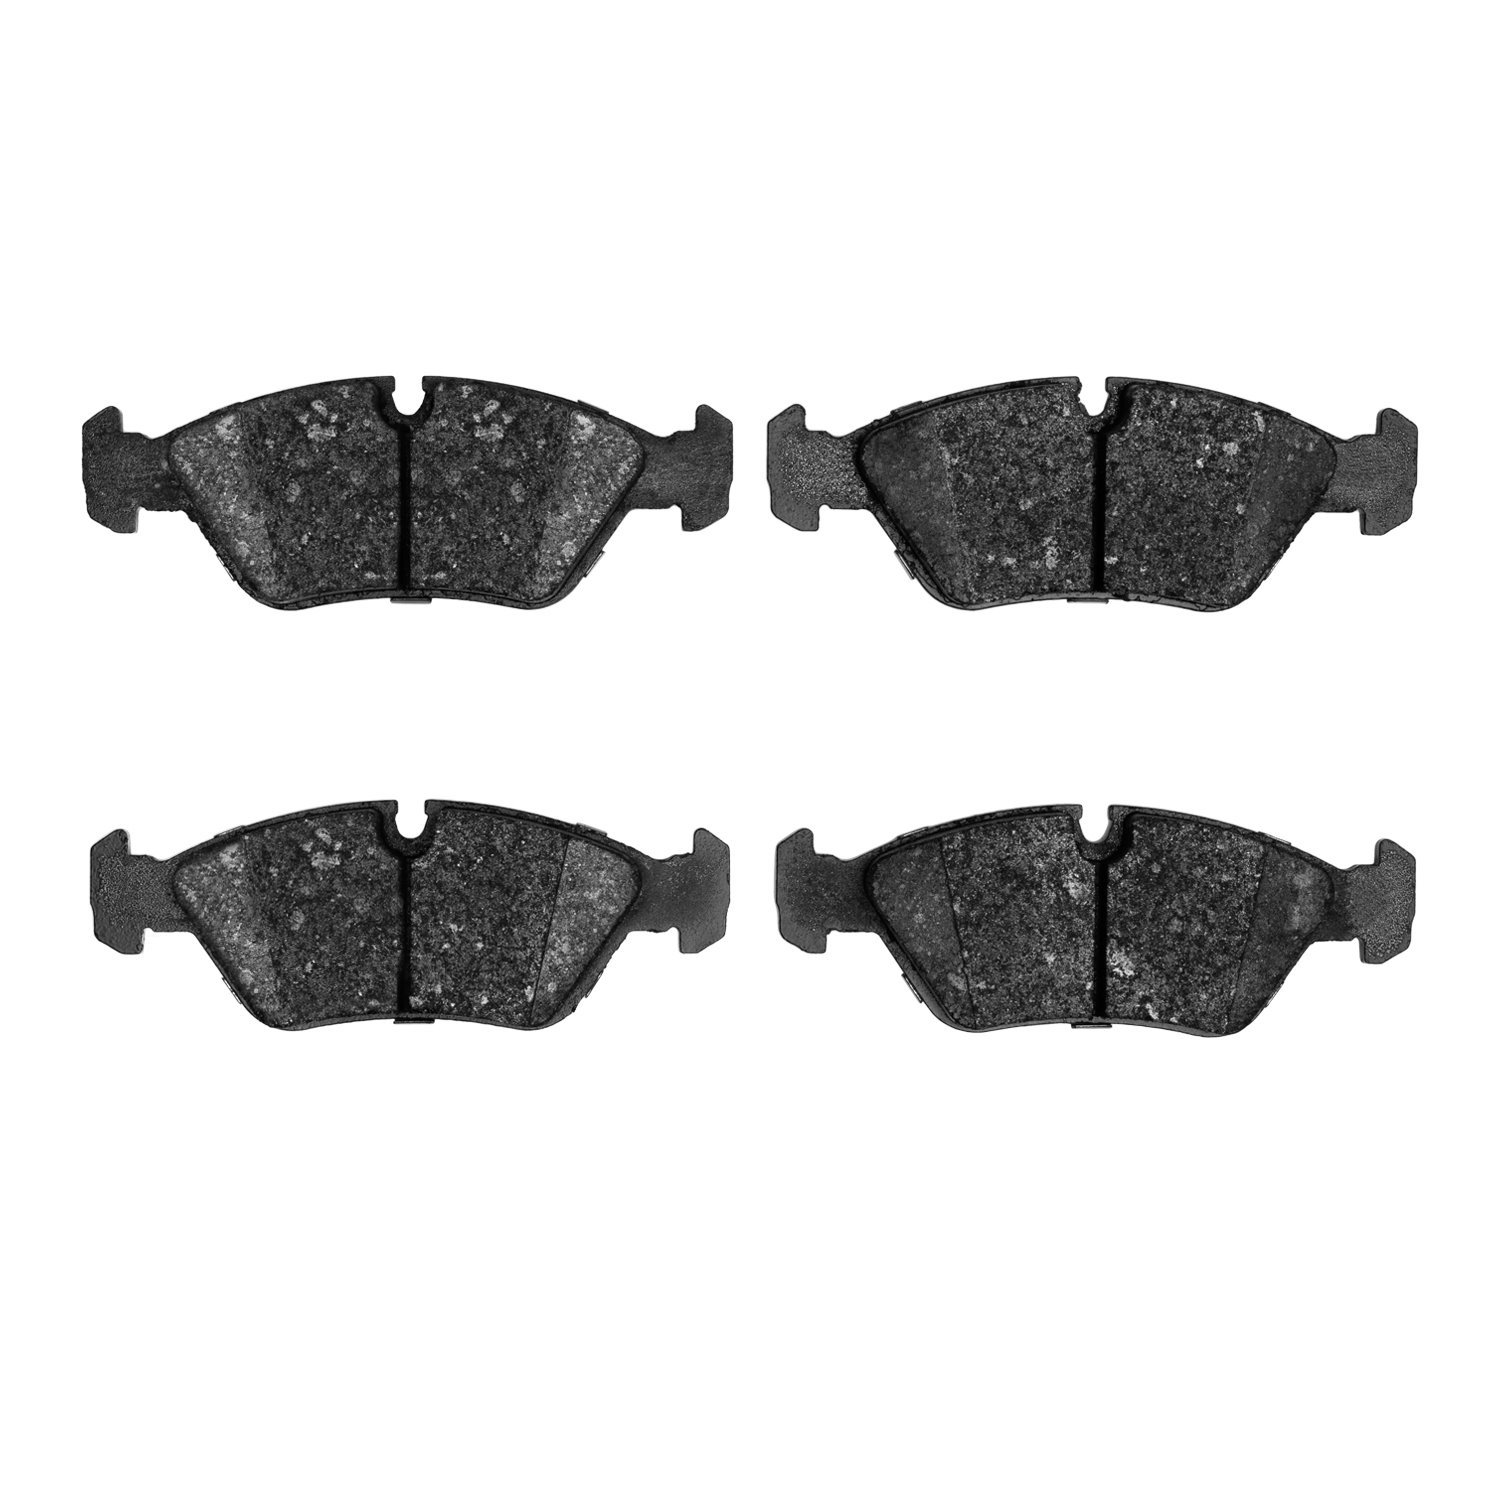 Ceramic Brake Pads, 1982-1993 Fits Multiple Makes/Models, Position: Front